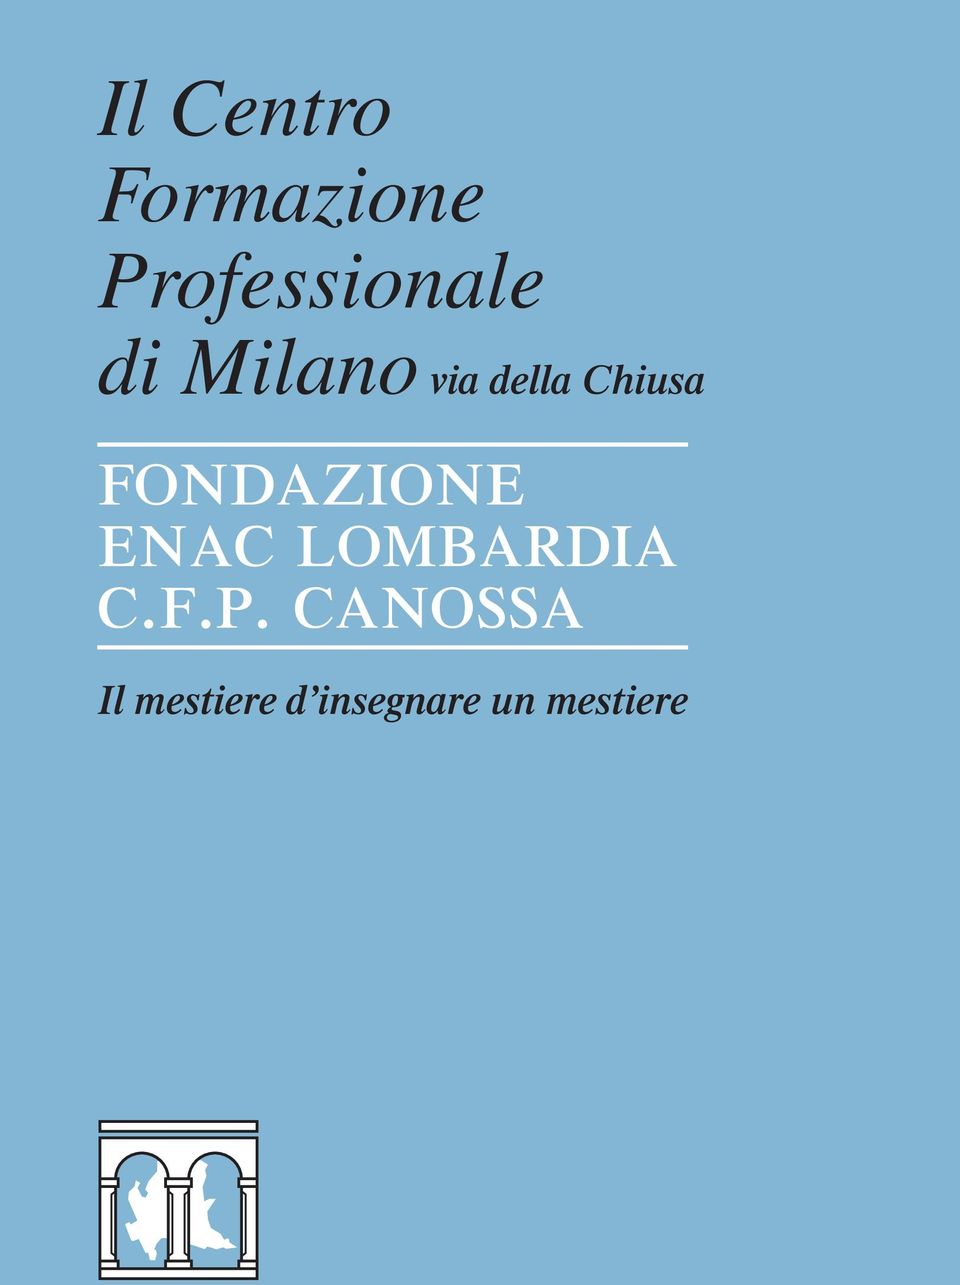 Fondazione ENAC Lombardia C.F.P.